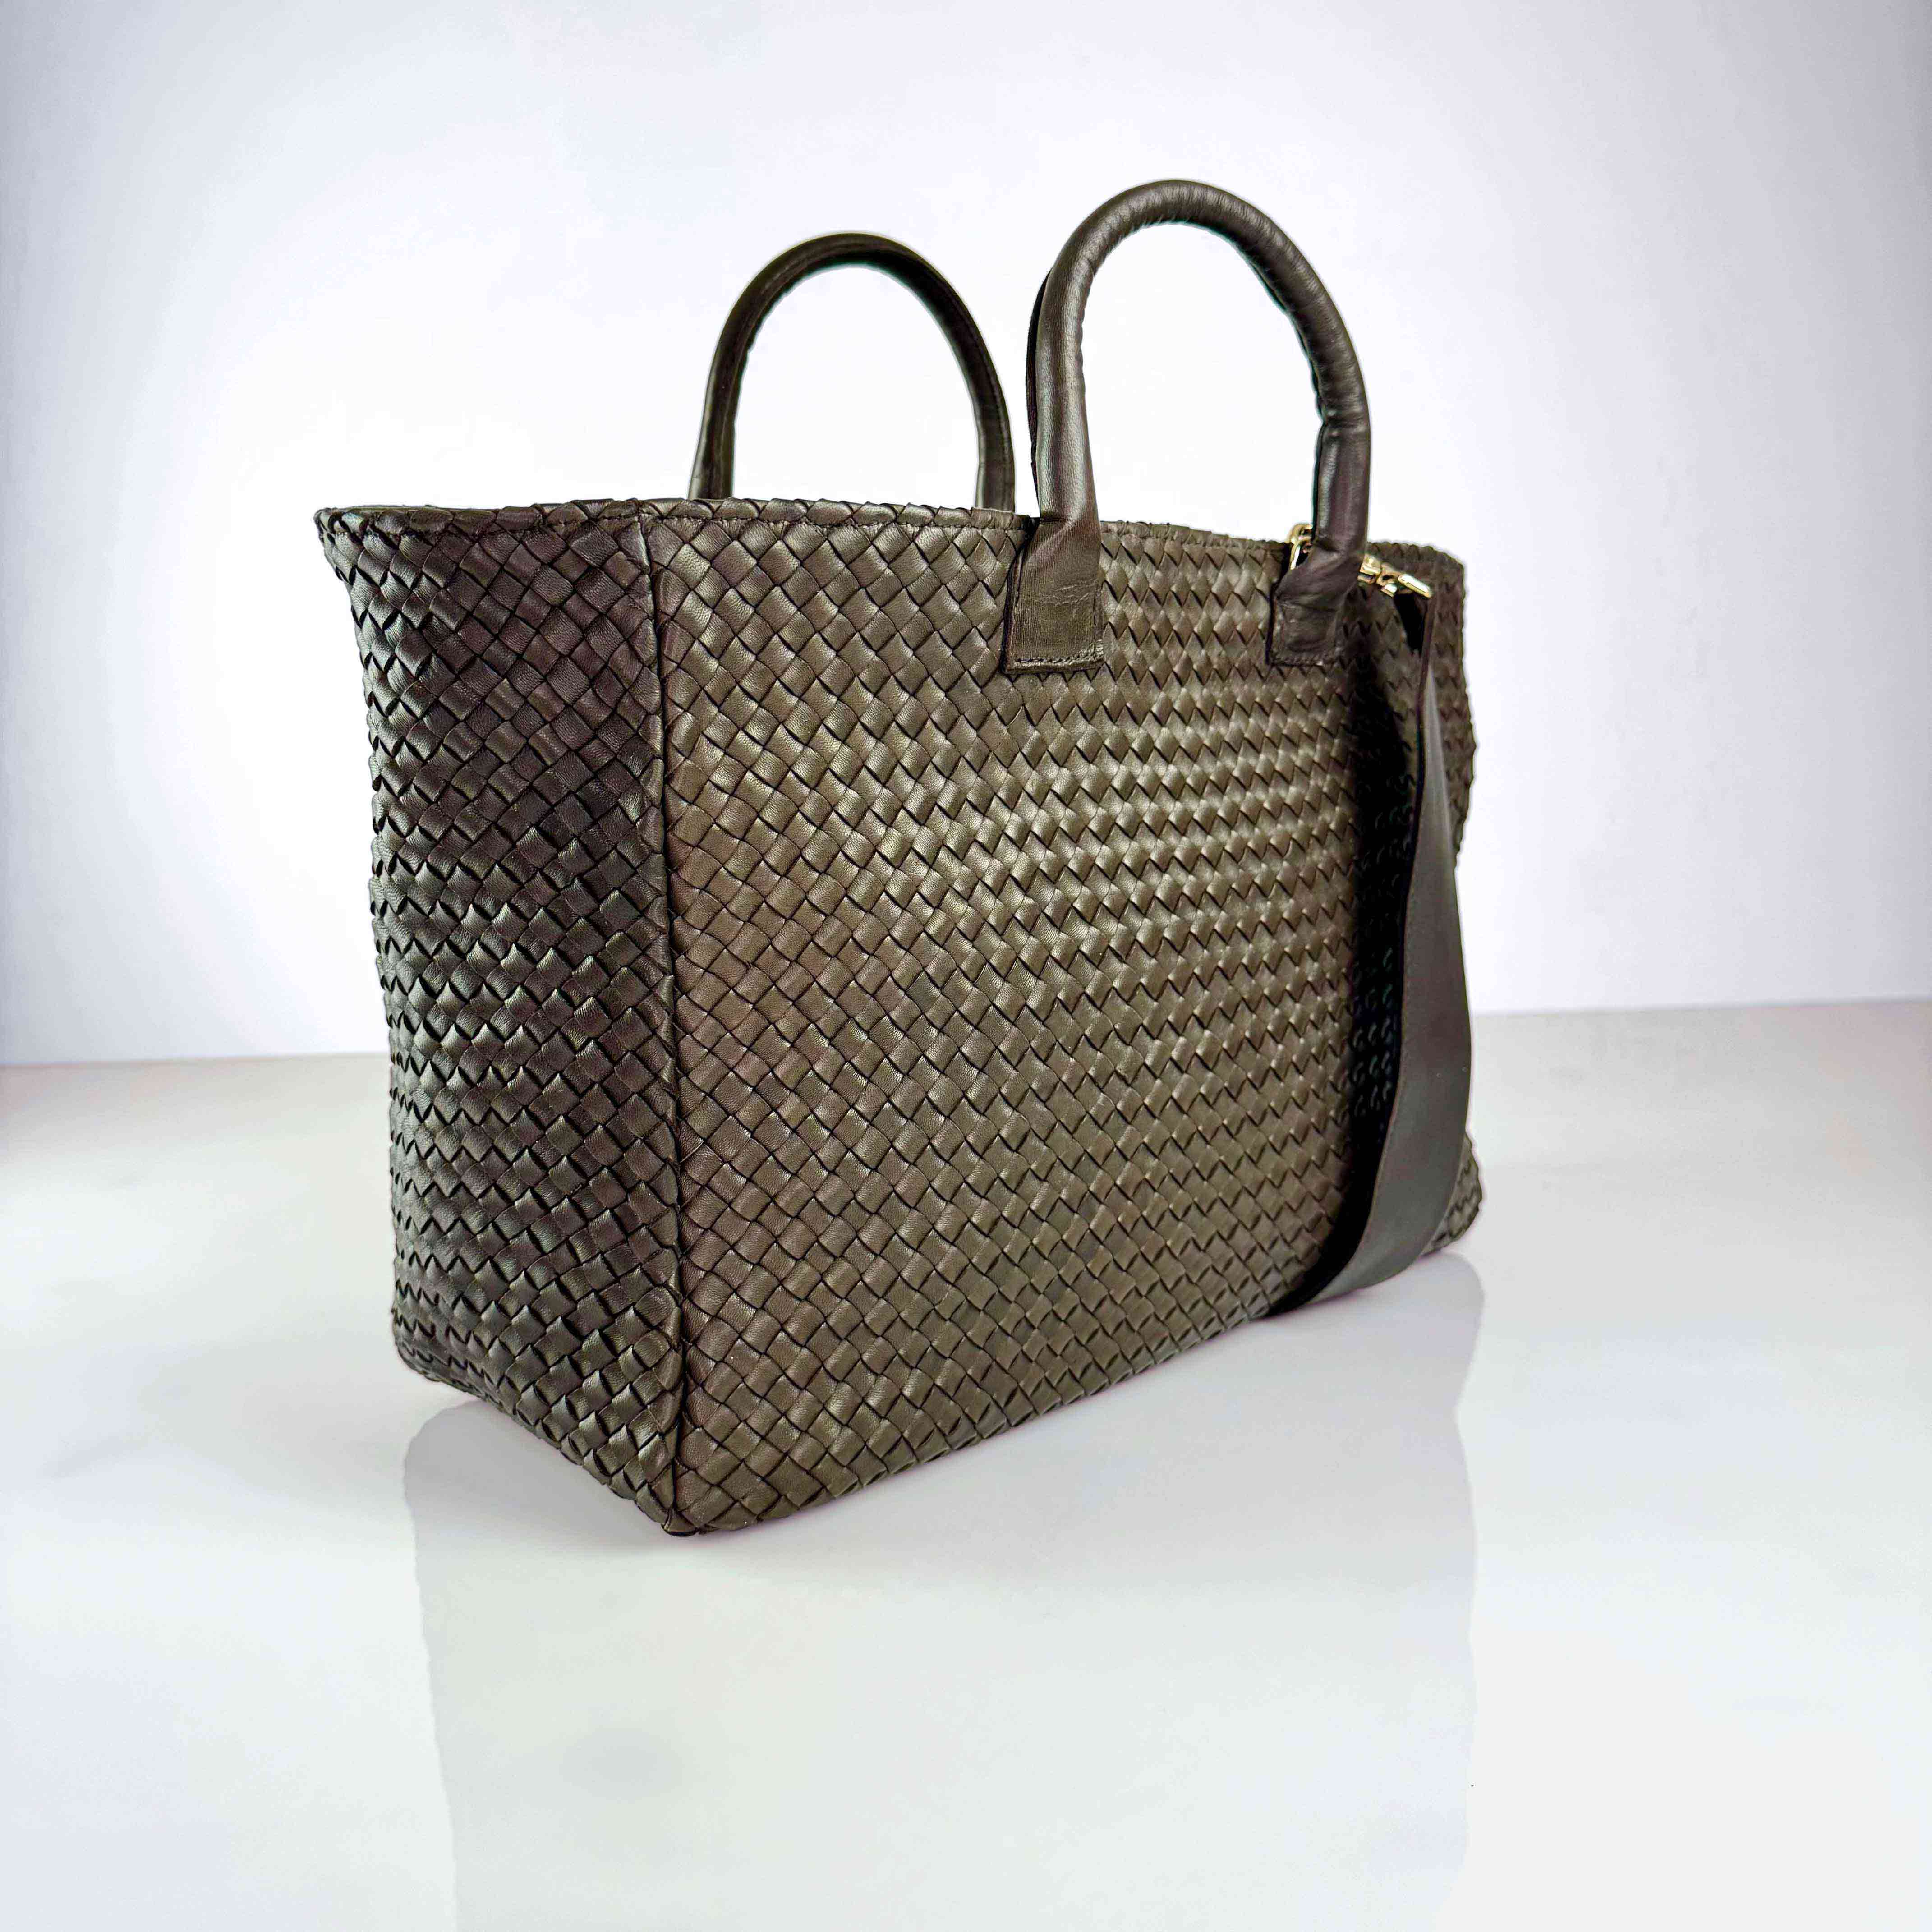 Die Handbag Cabas Standard von LABEL17 ist eine leichte Handtasche aus geschmeidigem, pflanzlich gegerbtem Nappaleder. Die von Hand geflochtene Tasche hat einen Reissverschluss und abnehmbaren Schulterriemen und ist innen mit Leder und einer verschliessbaren Innentasche ausgestattet.